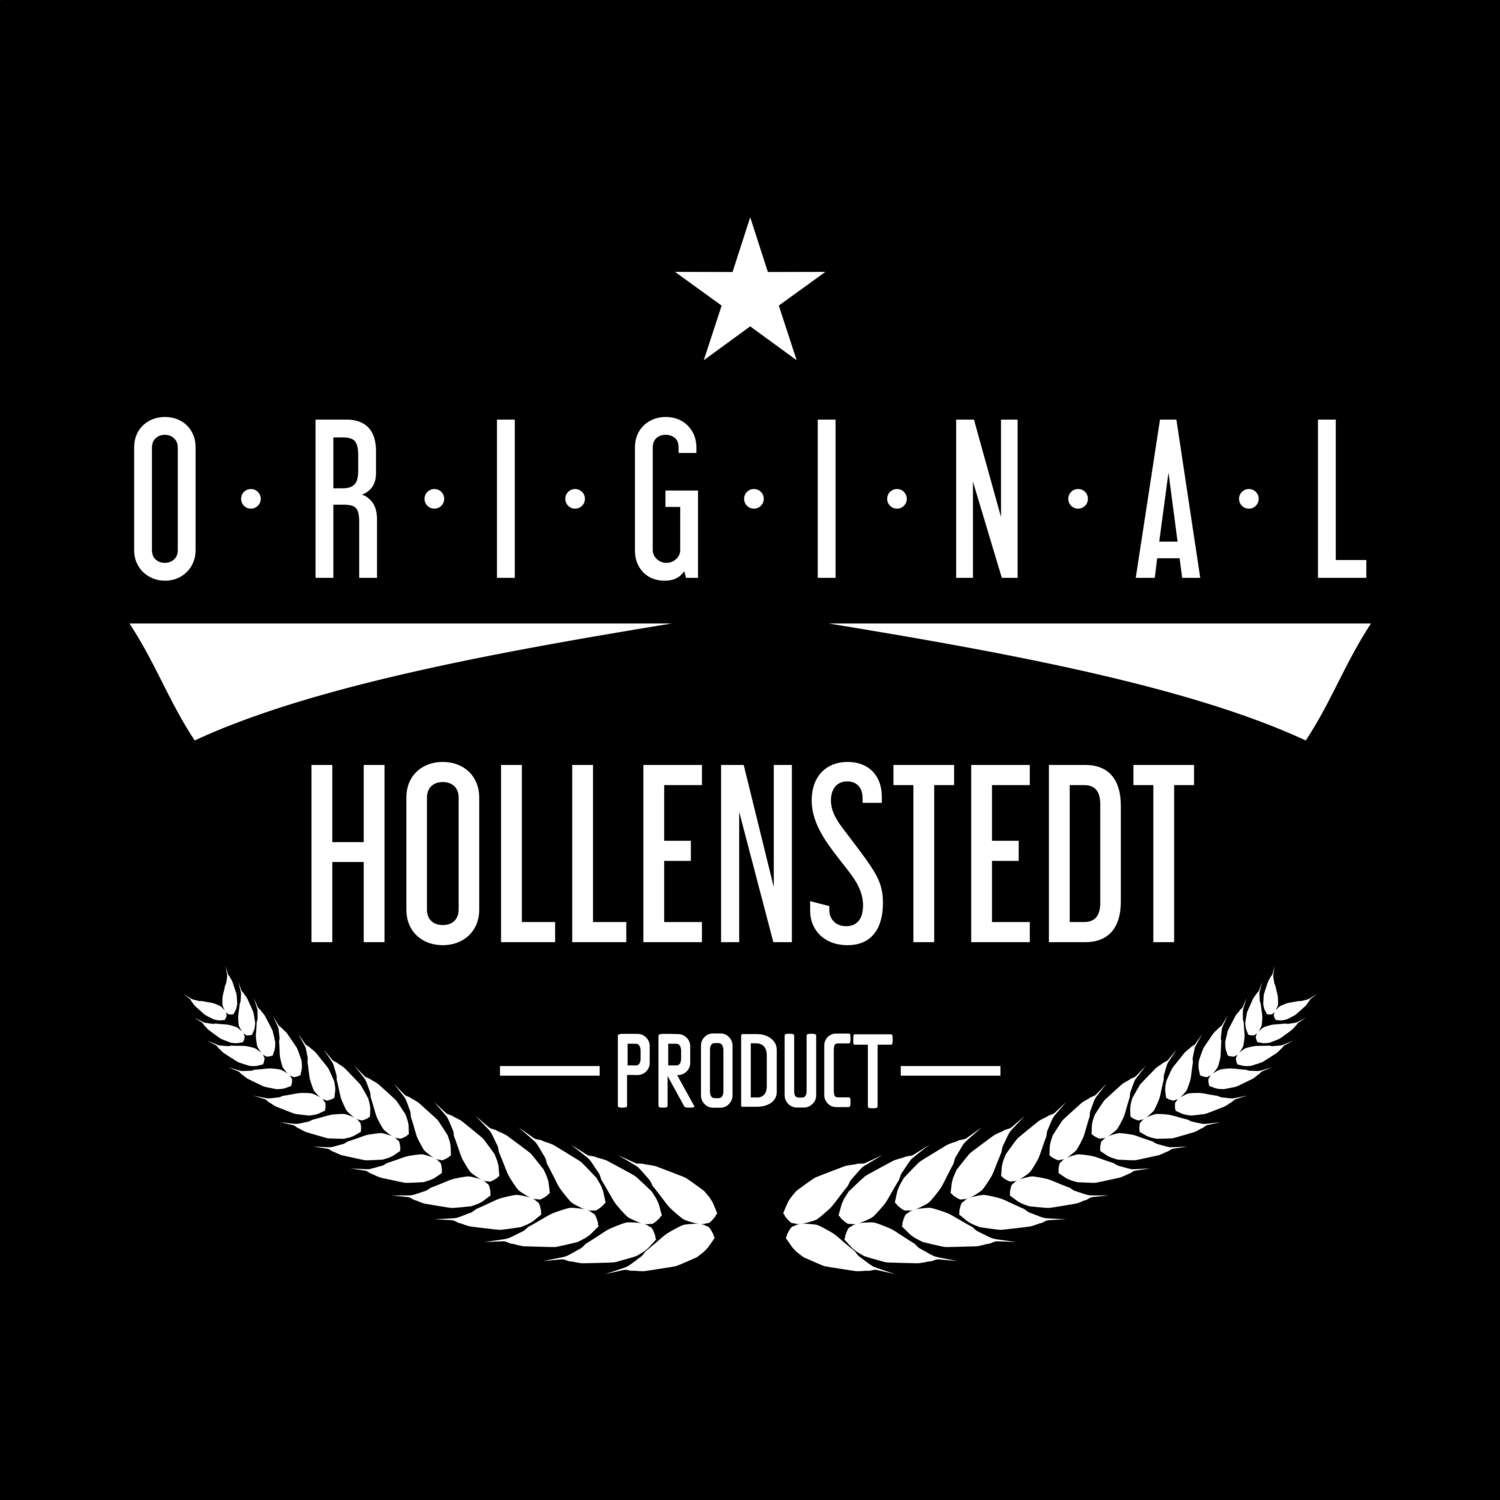 Hollenstedt T-Shirt »Original Product«